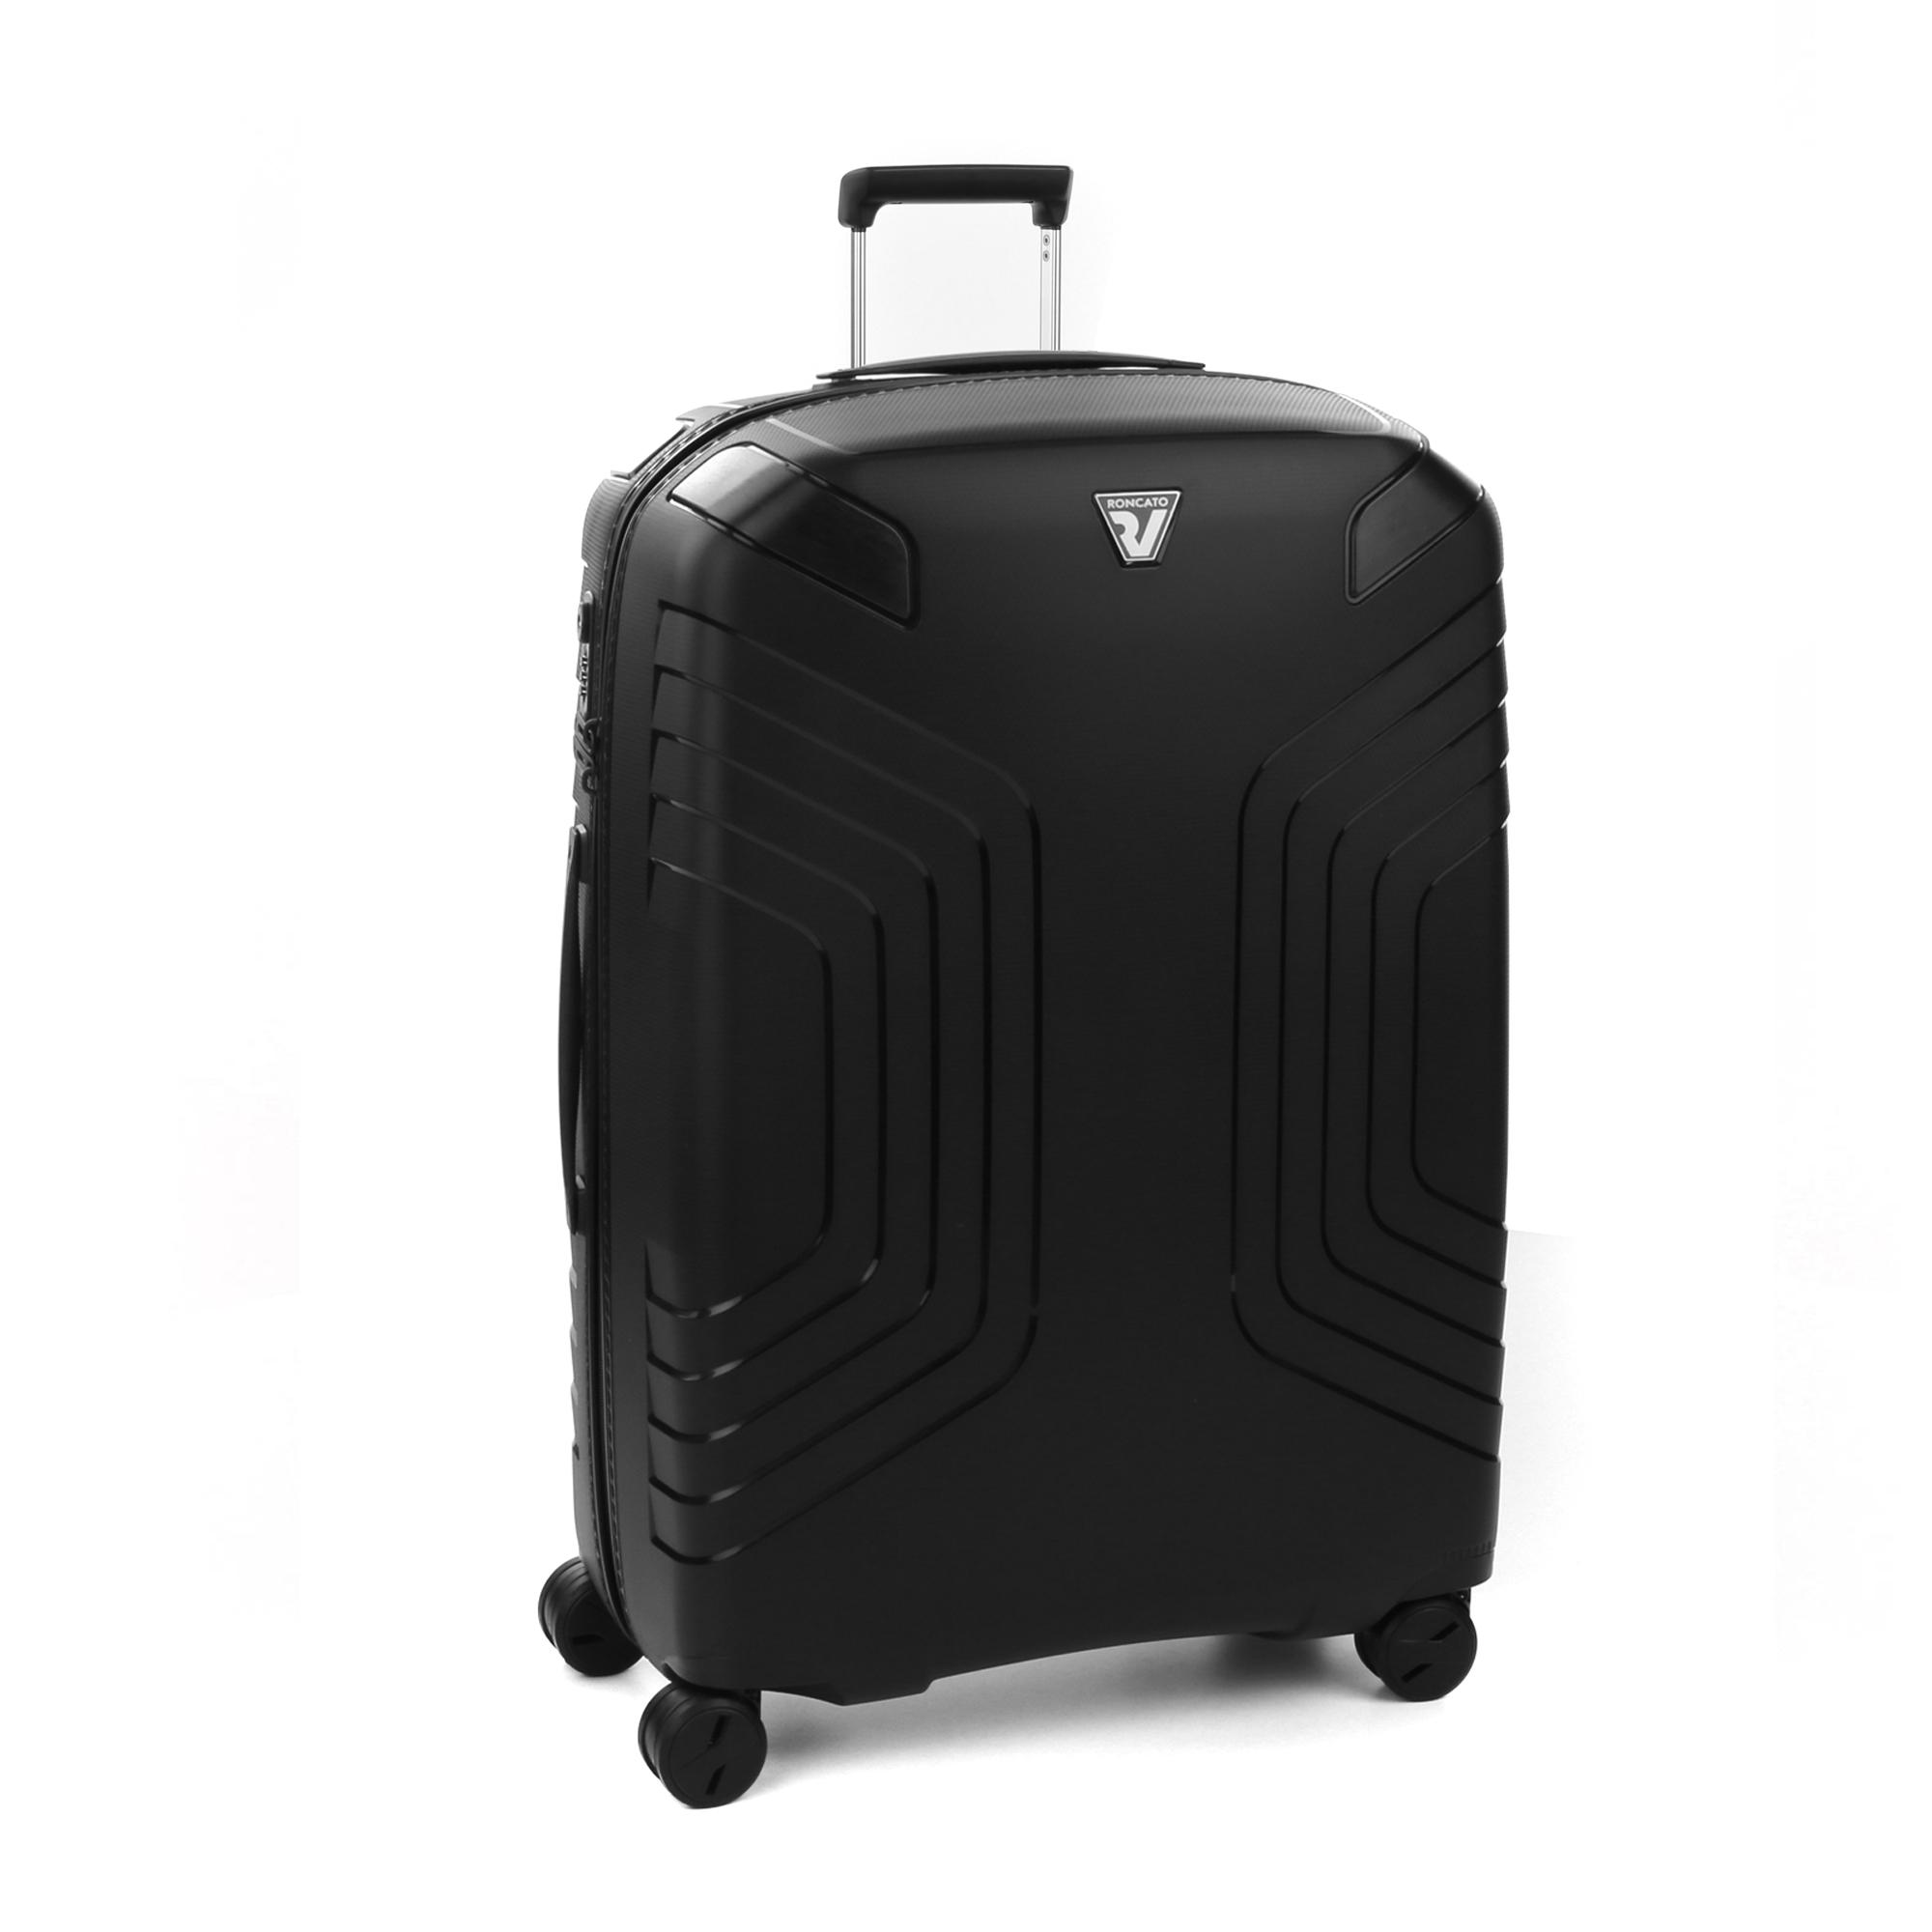 Велика валіза Roncato YPSILON 5761/0101 чорна